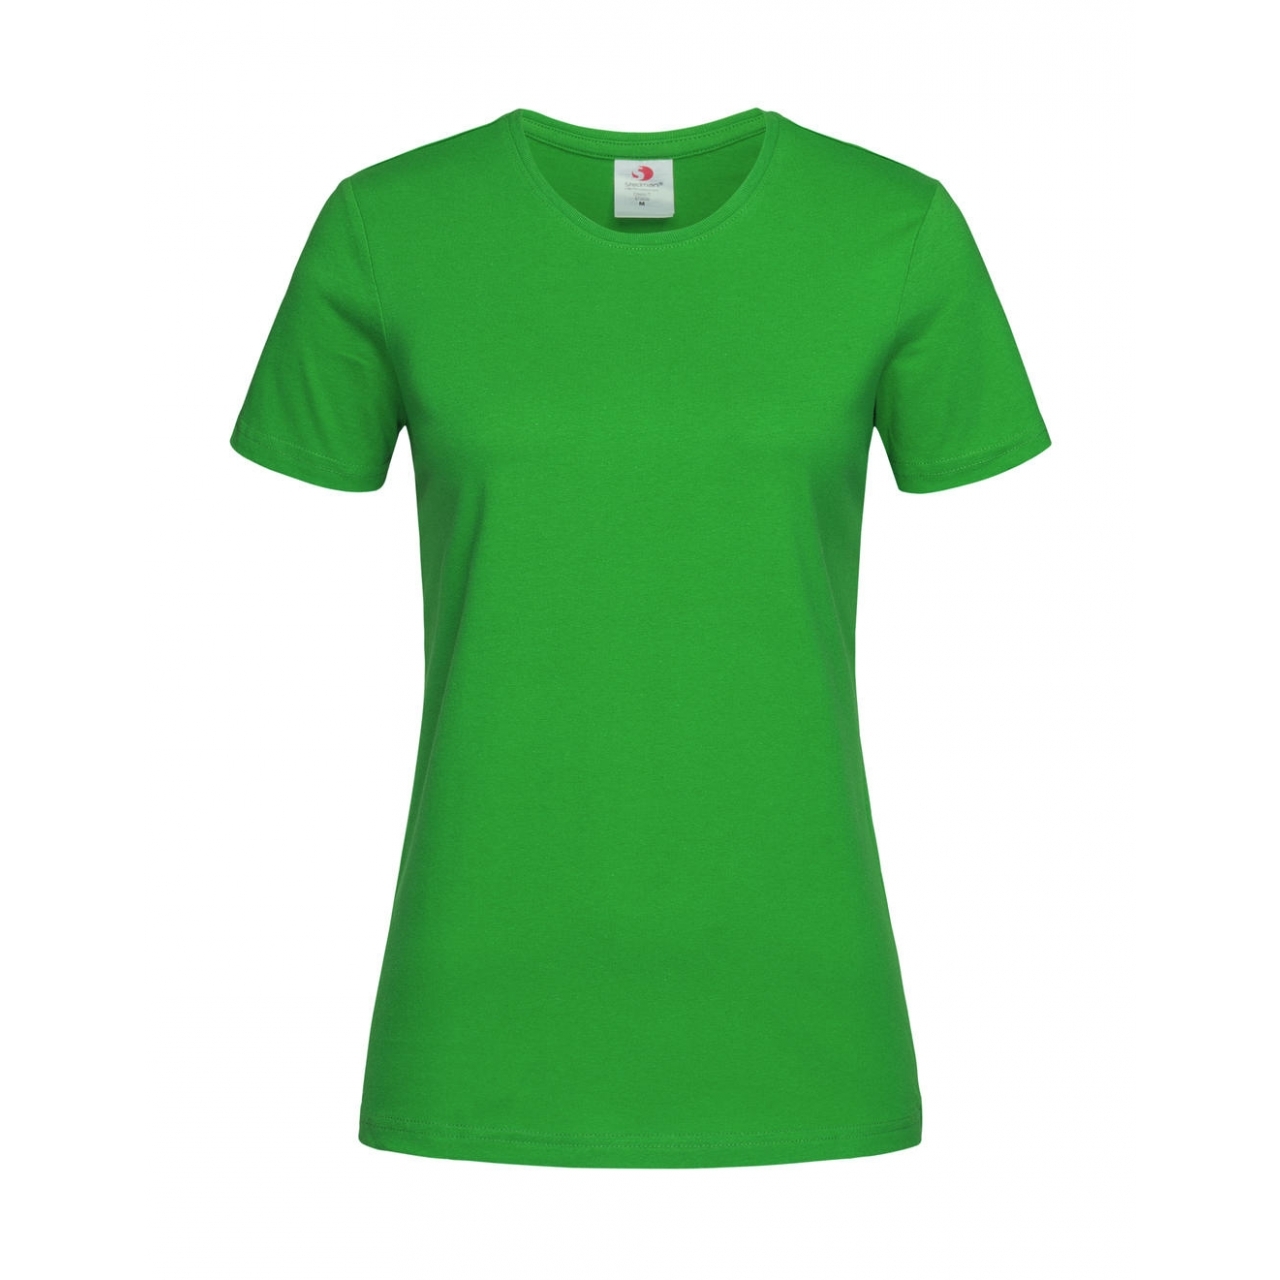 Tričko dámské Stedman Fitted s kulatým výstřihem - zelené, S